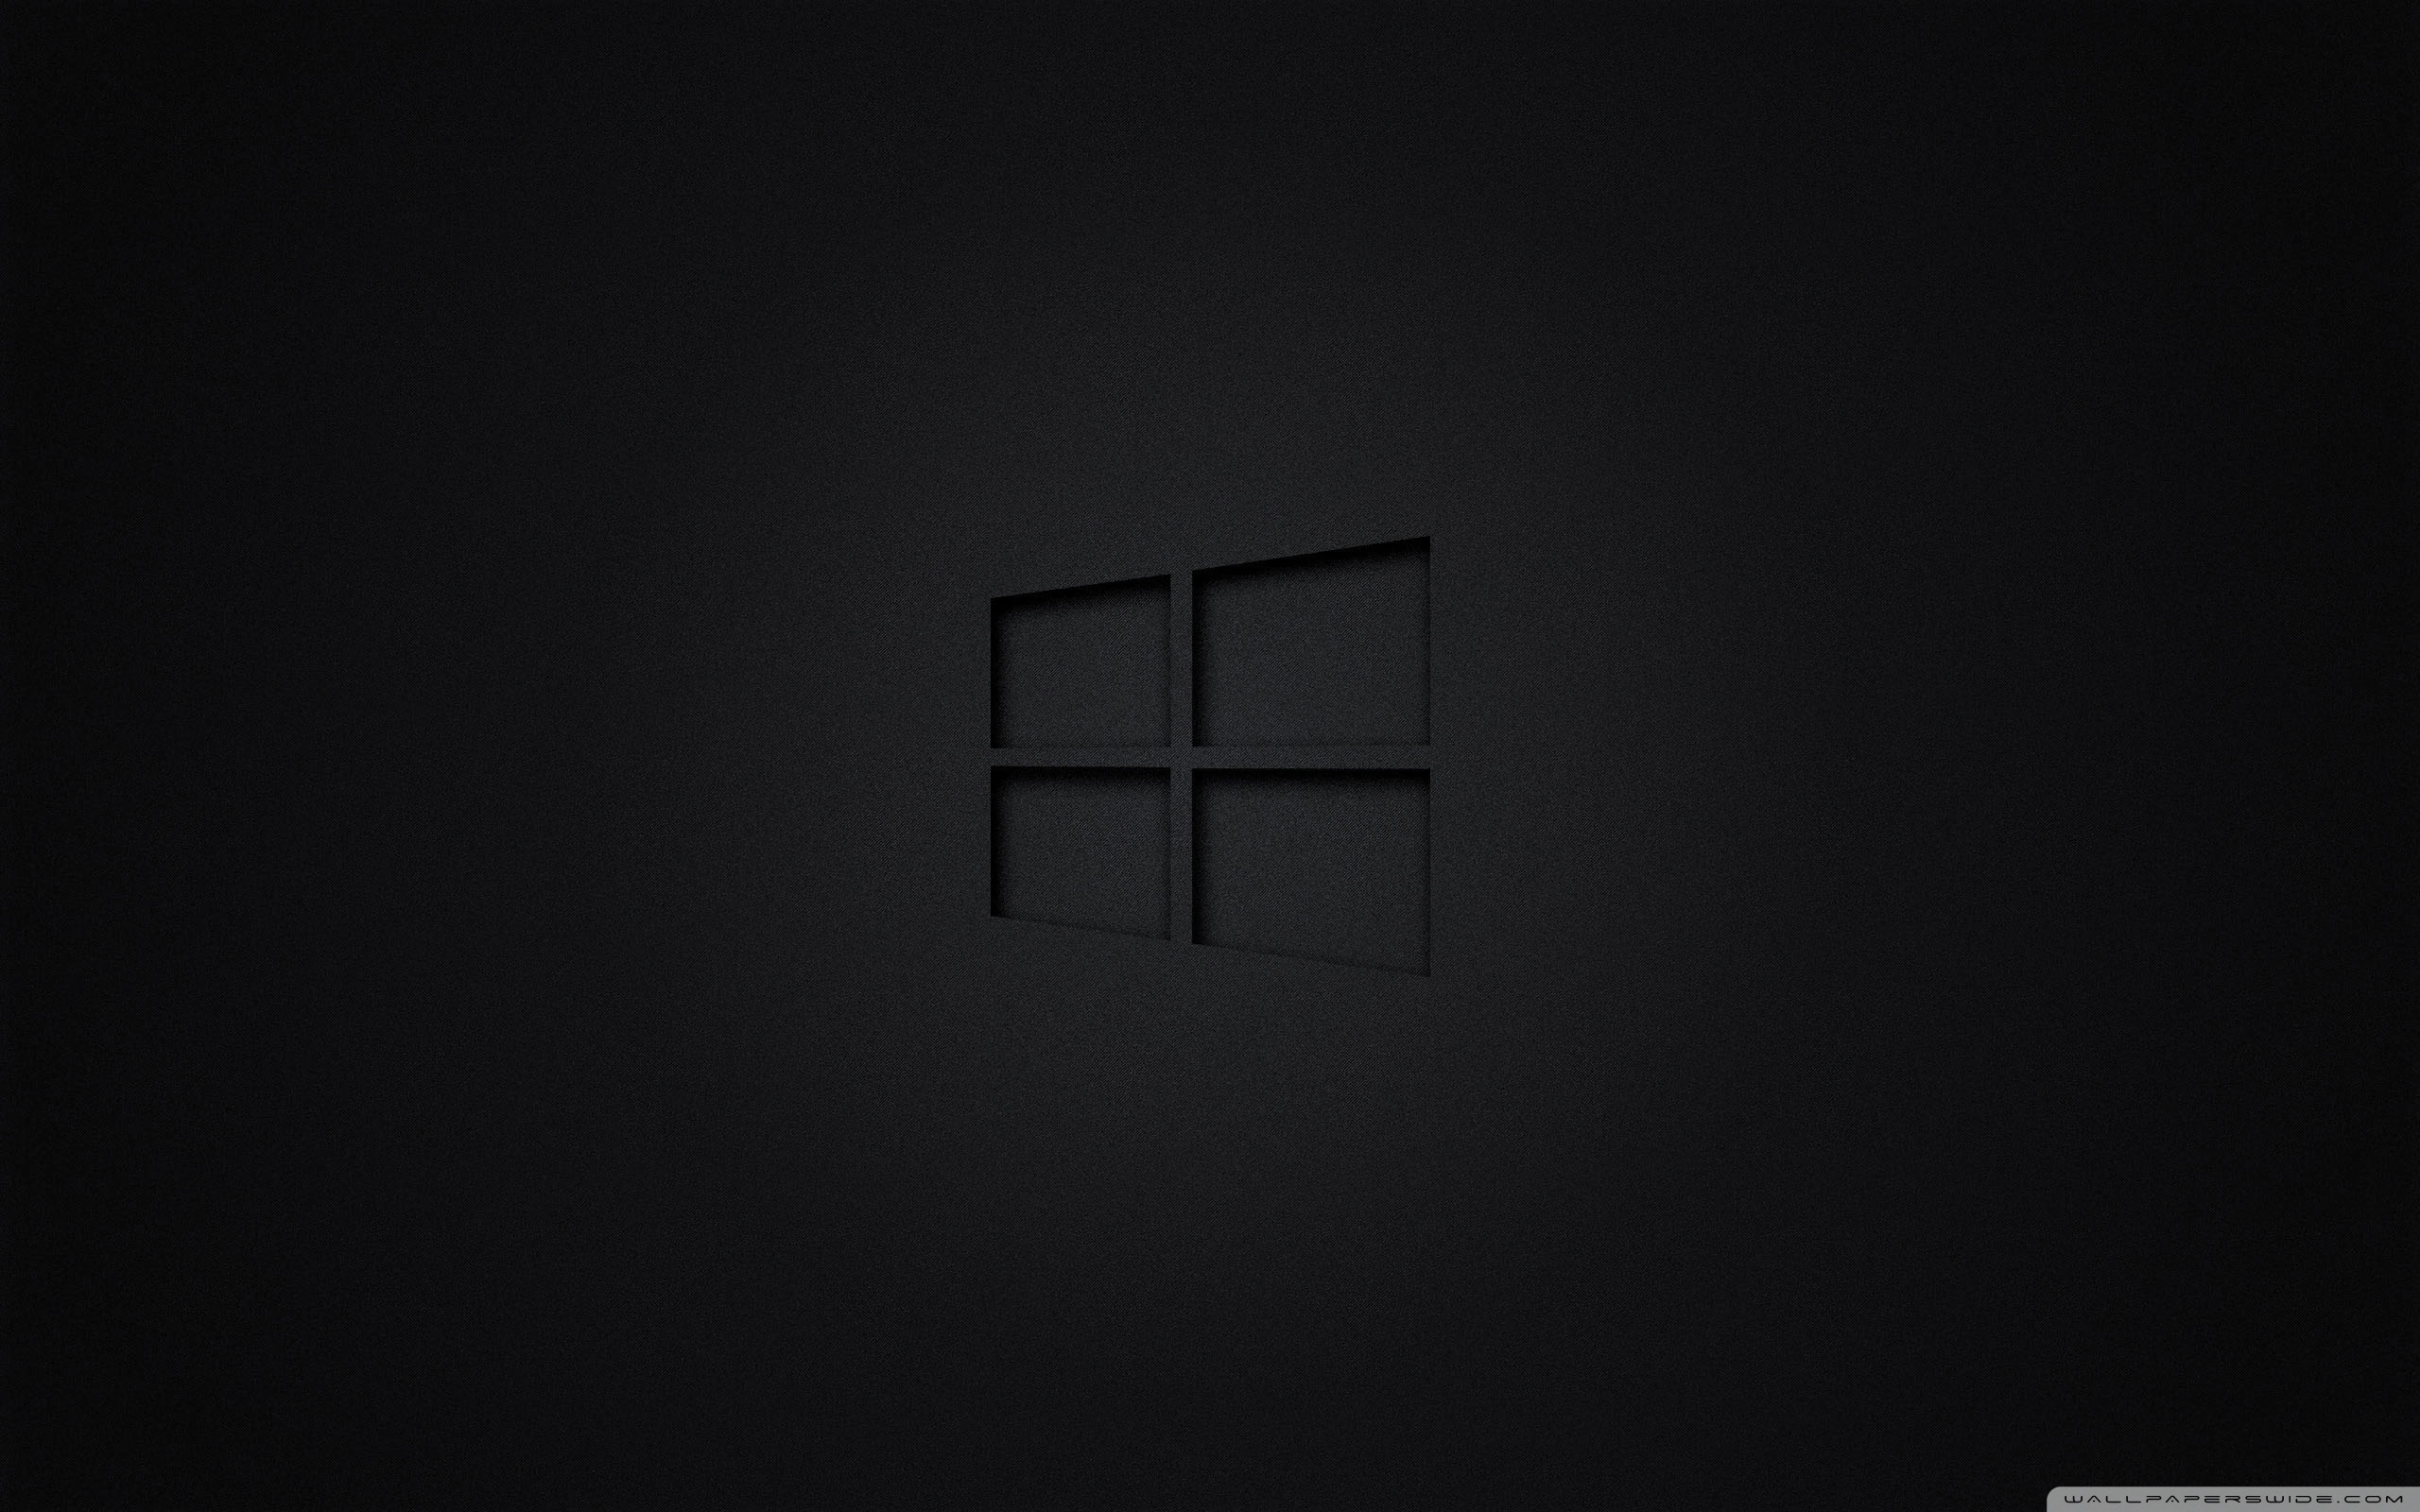 Dark Windows 10 is Best Windows 10 : r/pcmasterrace